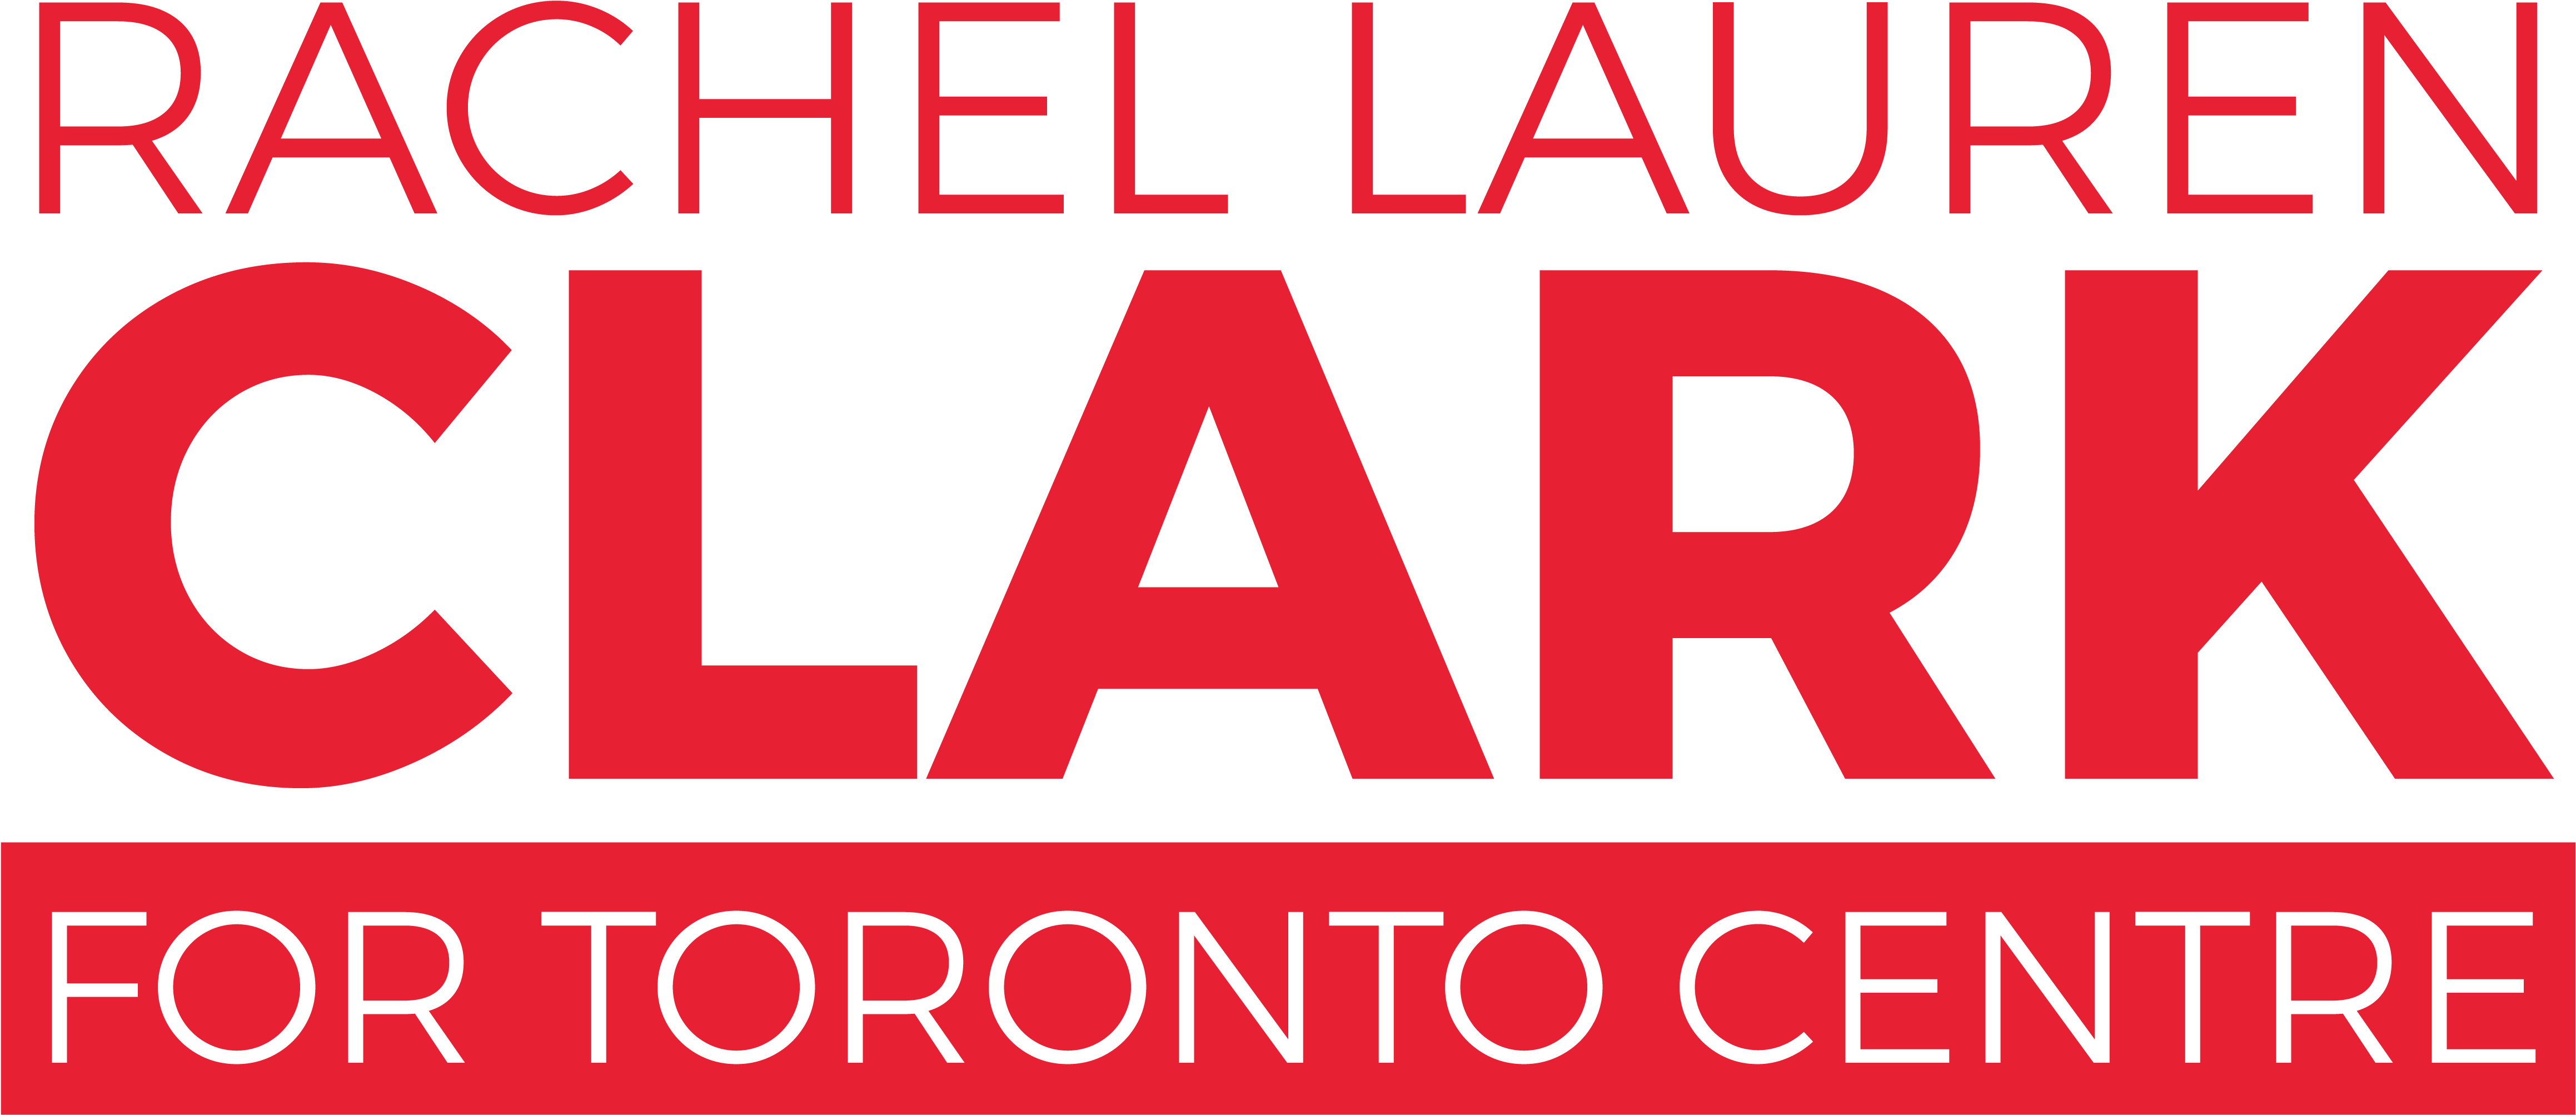 Rachel Lauren Clark For Toronto Centre - Graphic Design Clipart (4634x2597), Png Download